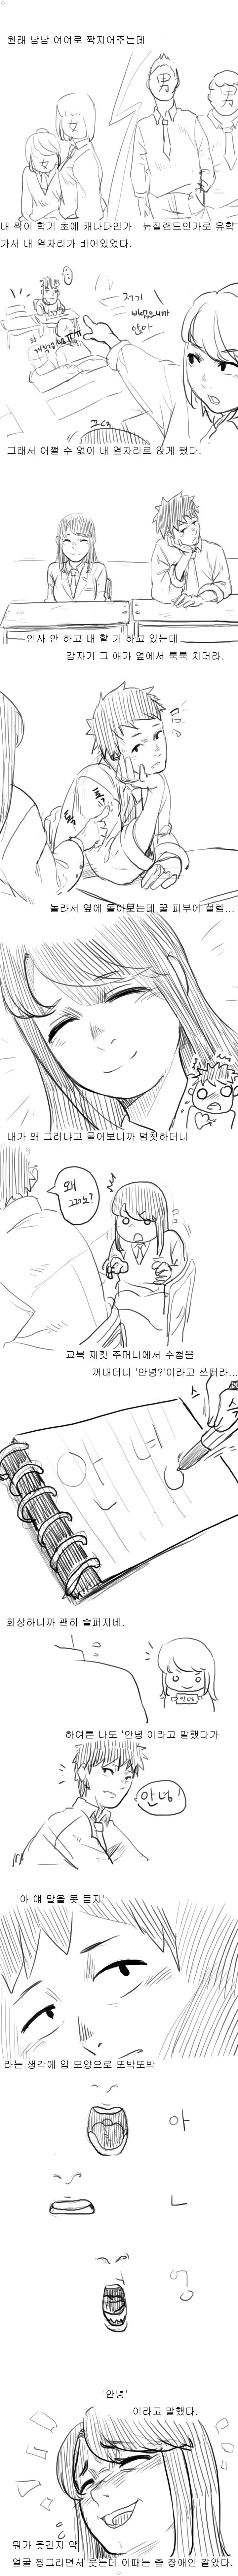 추억의 청각장애인 처자애랑 짝이었던 썰만화 ㅎㅎㅎㅎㅎ 이미지 #2